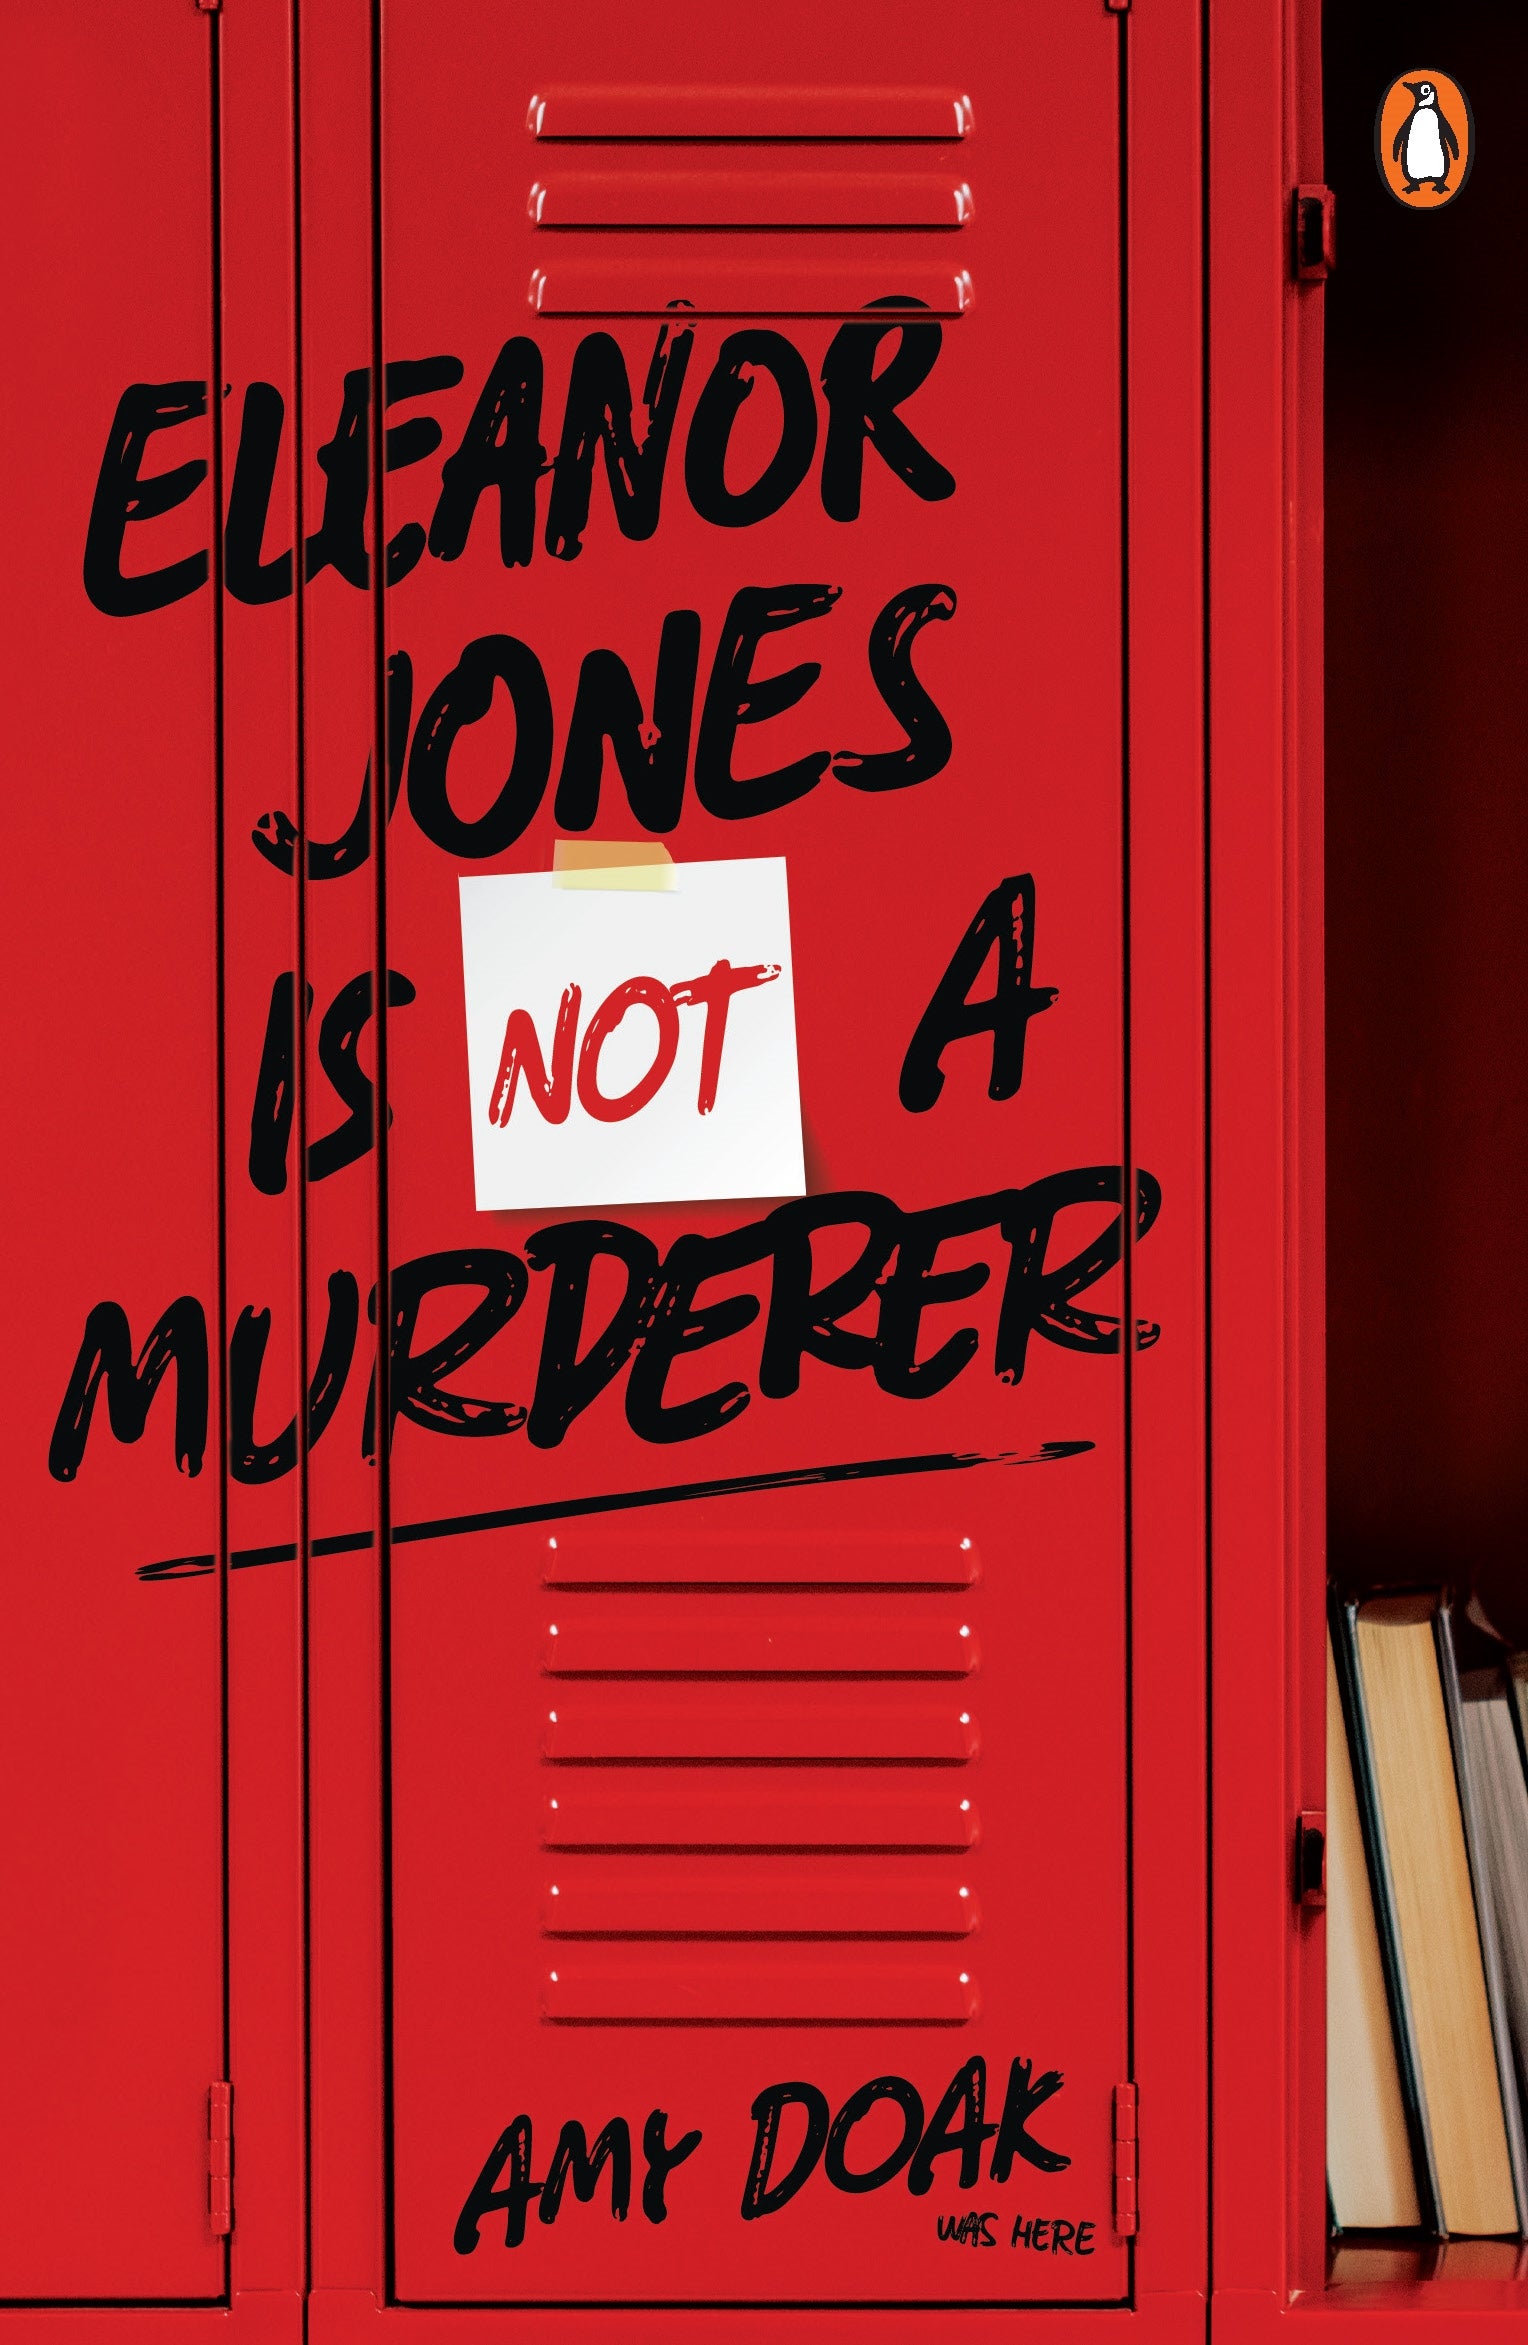 Eleanor Jones is Not a Murderer by Amy Doak